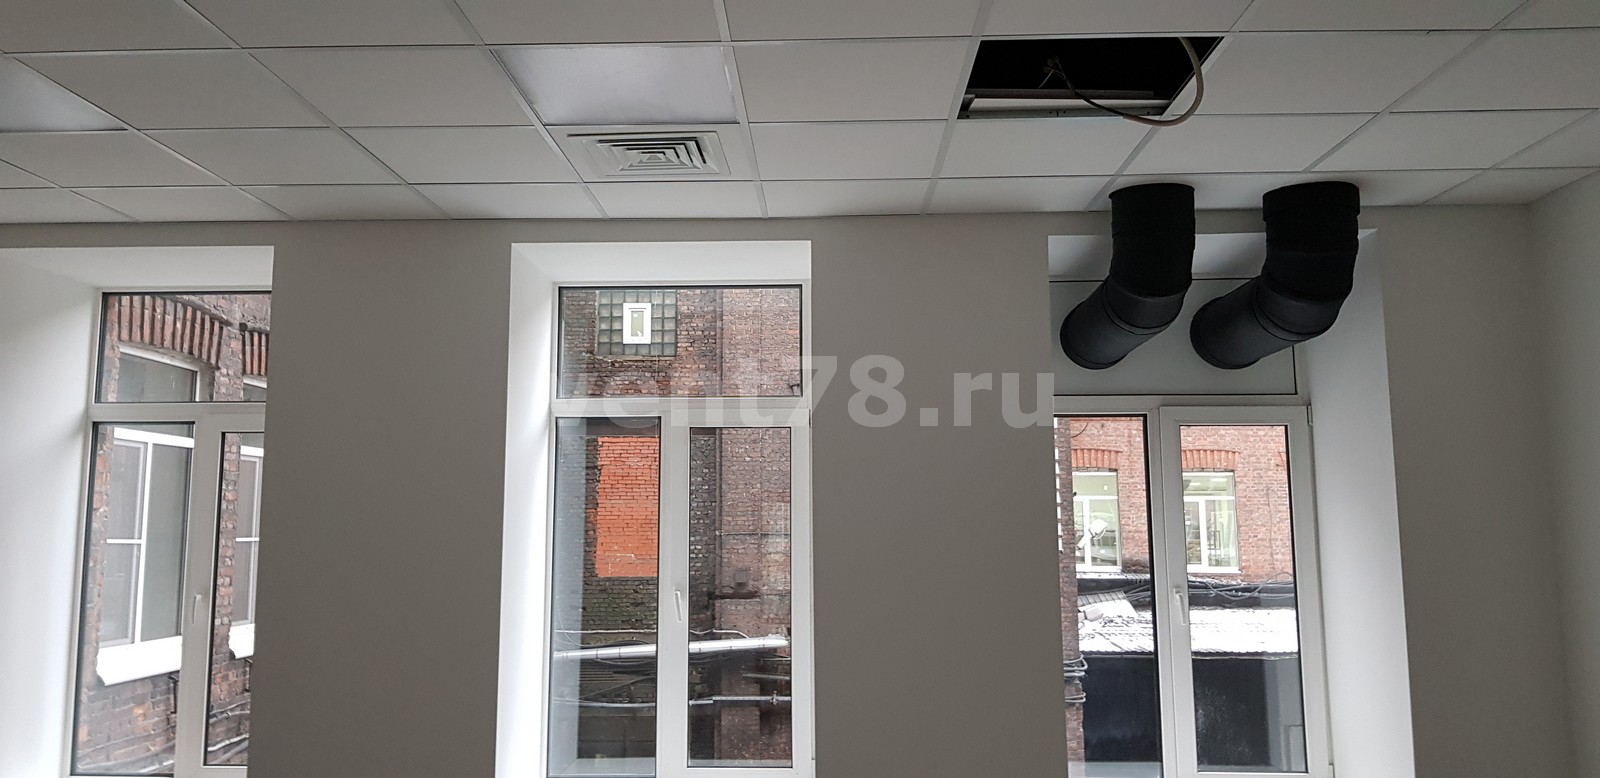 Проектирование и монтаж систем вентиляции офисных помещений и столовой со встроенным охлаждением воздуха.